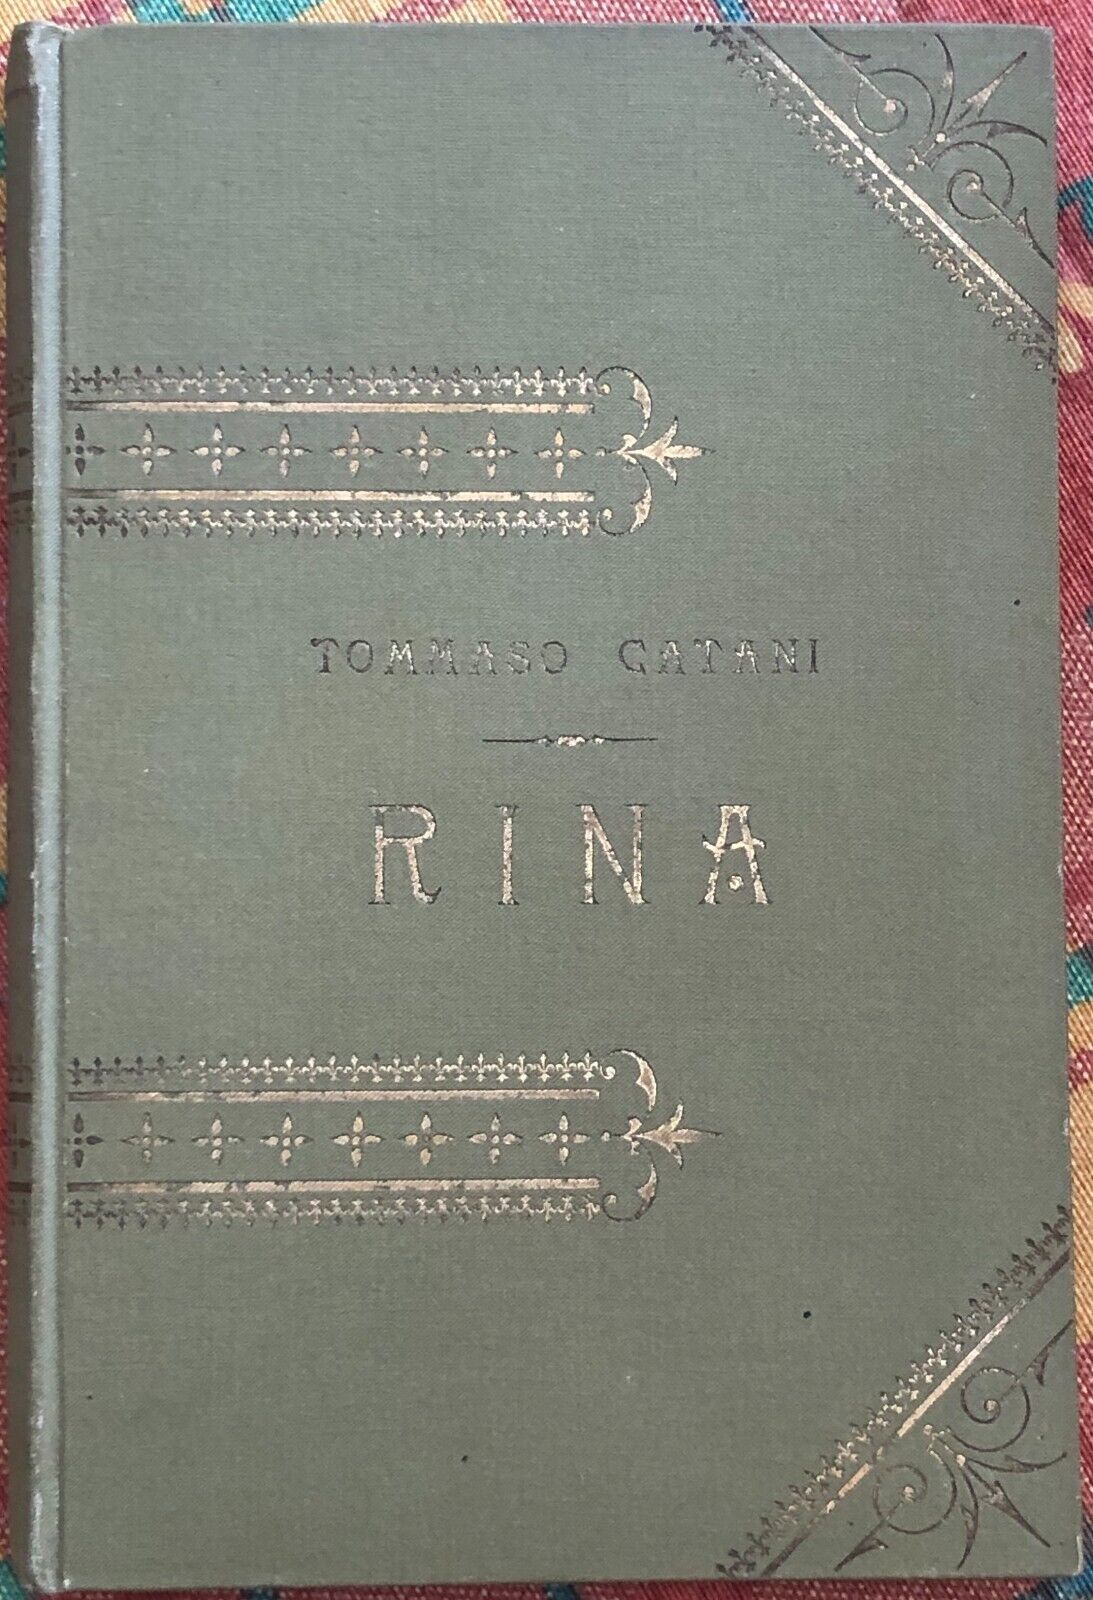 Rina di Tommaso Catani, 1896, R. Bemporad & Figlio - Editori